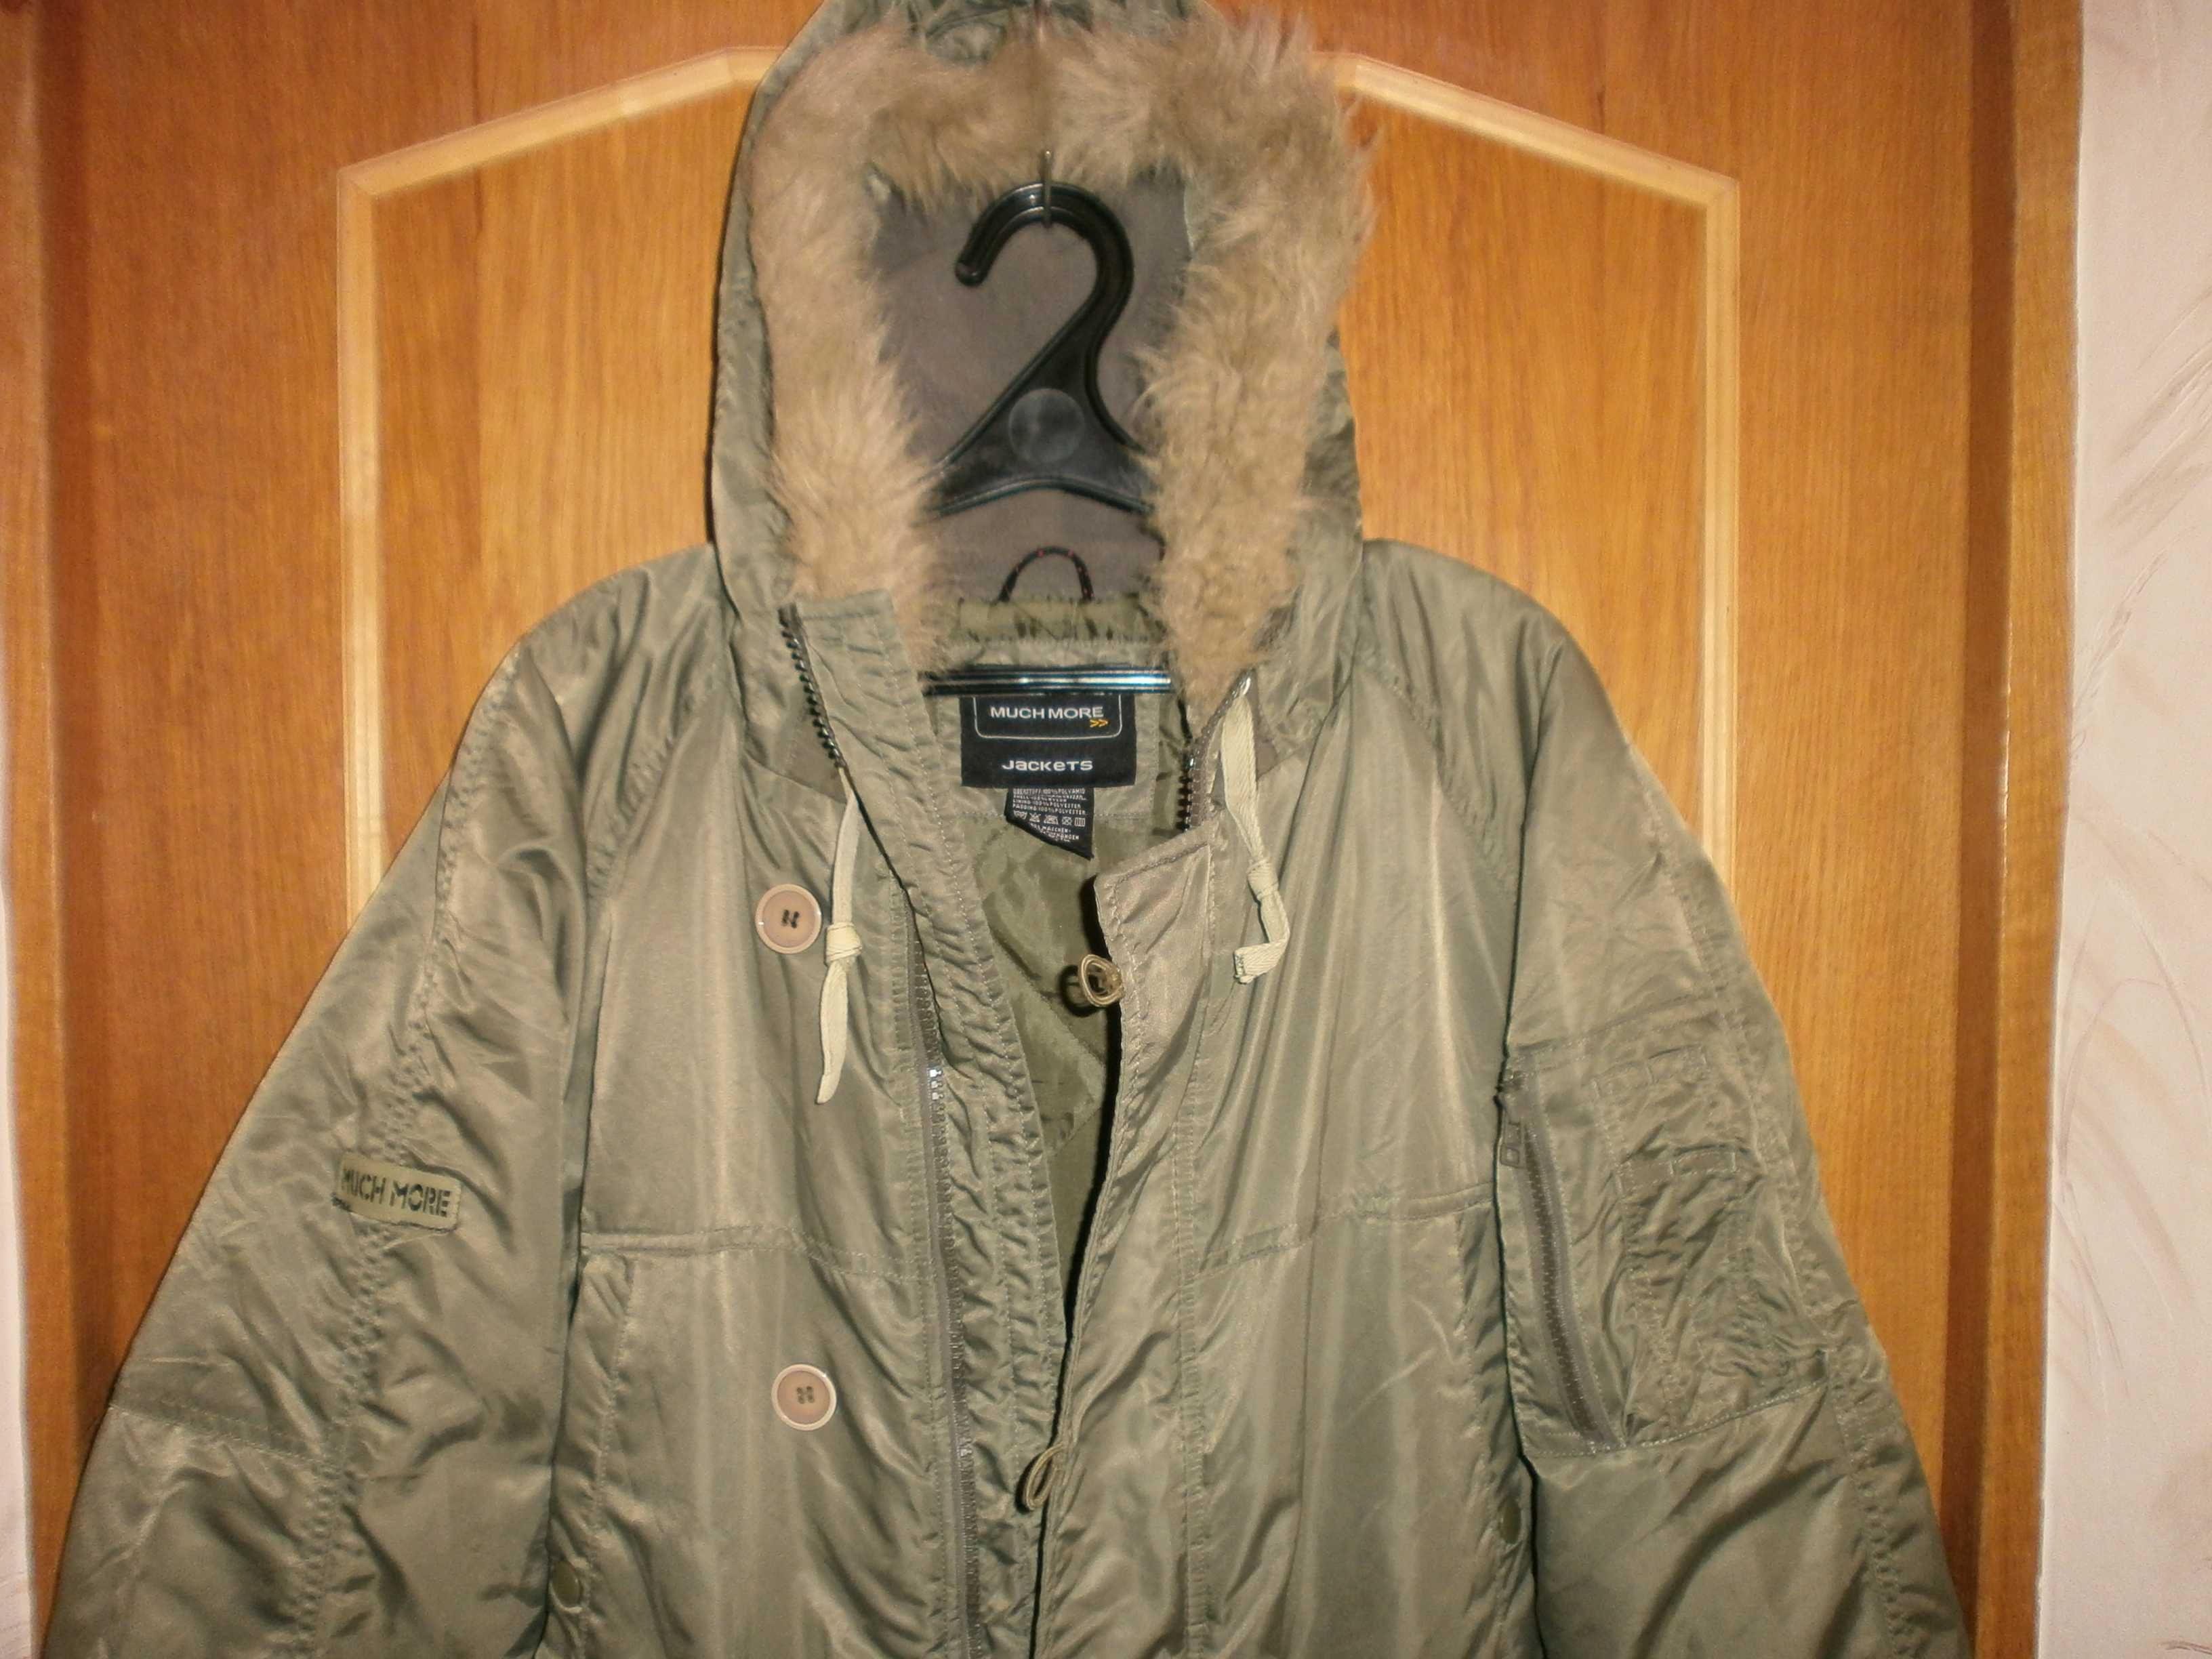 Куртка парка аляска Much More, олива, разм. M, наш 52. ПОГ-64 см.